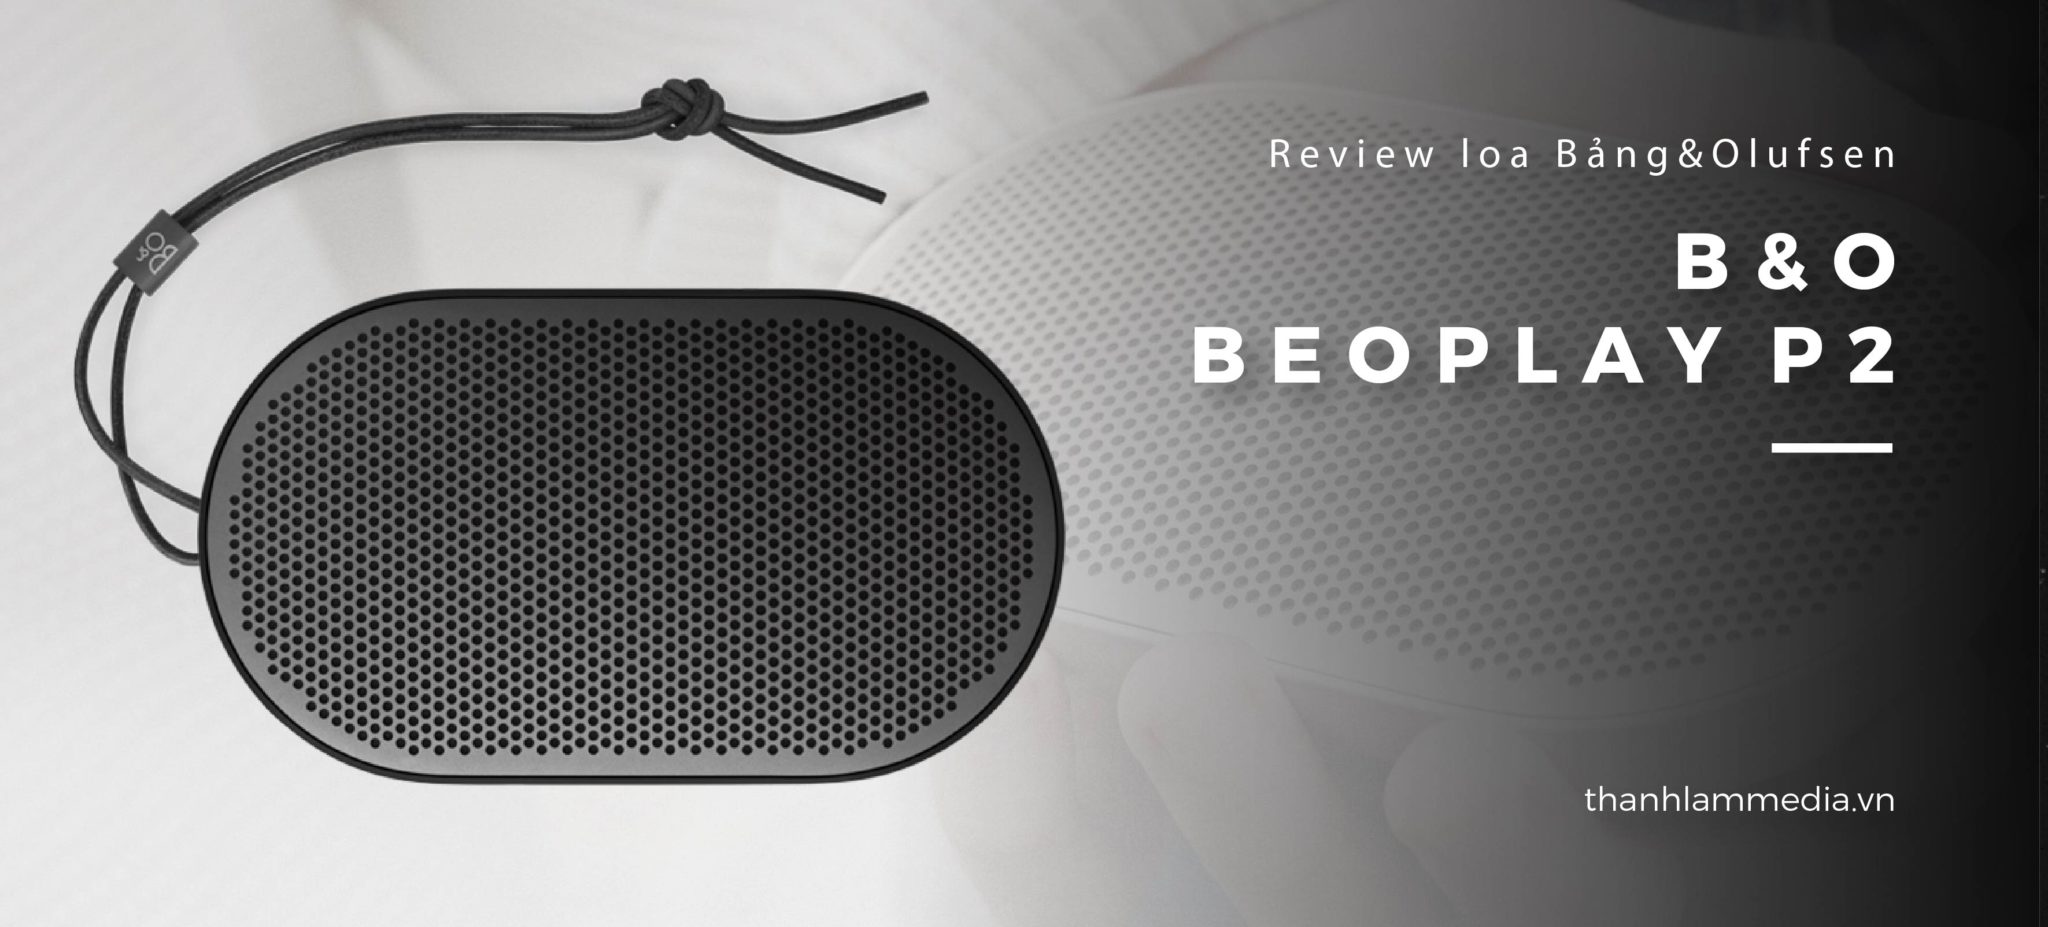 Loa B&O Beoplay P2: Thiết kế nhỏ gọn, âm thanh ấn tượng 4